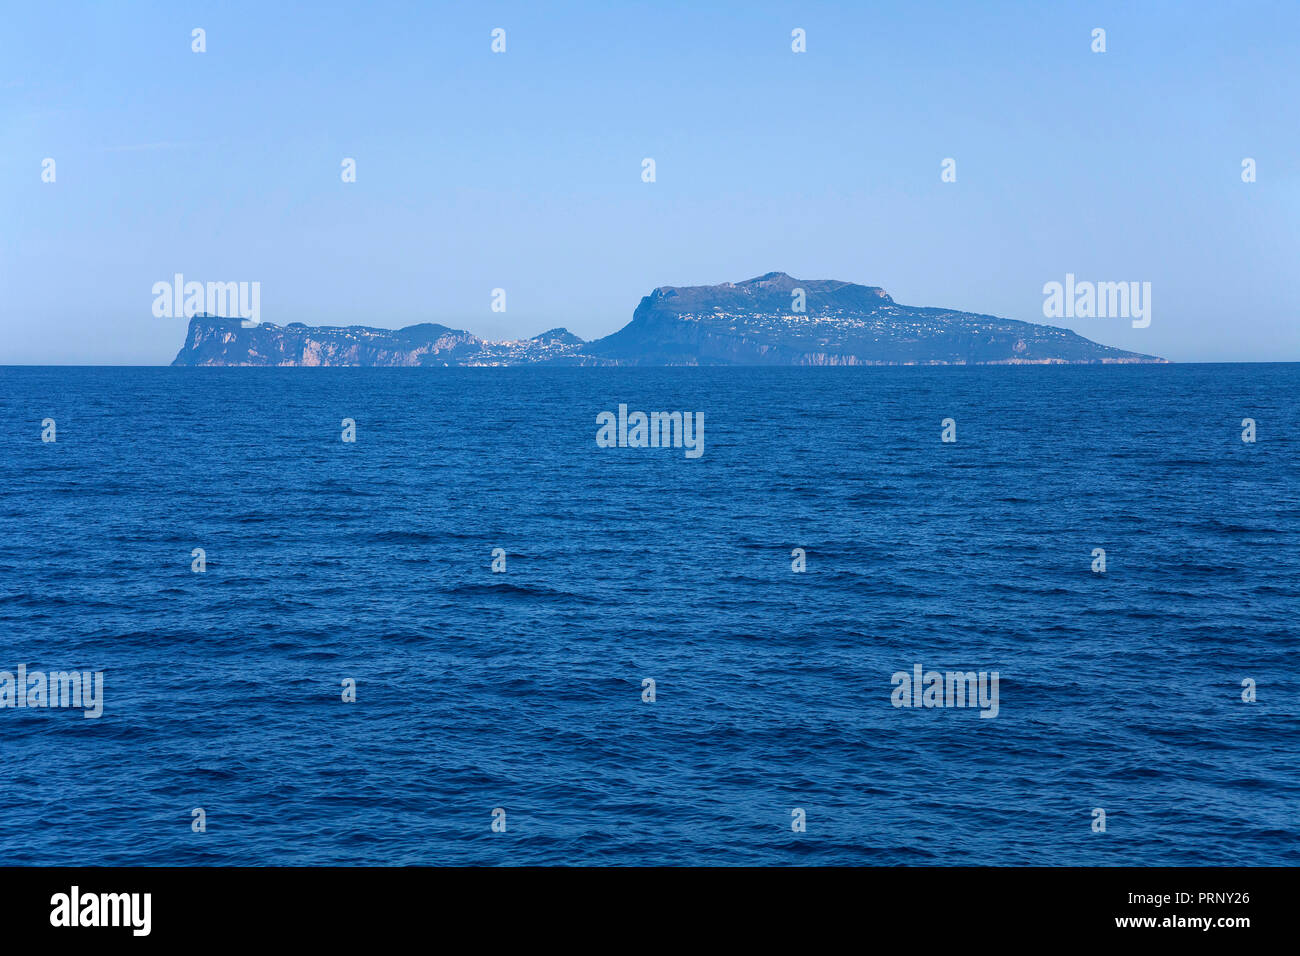 Die Insel Capri im Golf von Neapel, Kampanien, Italien | Vista total de la isla de Capri, en el Golfo de Nápoles, Campania, Italia Foto de stock